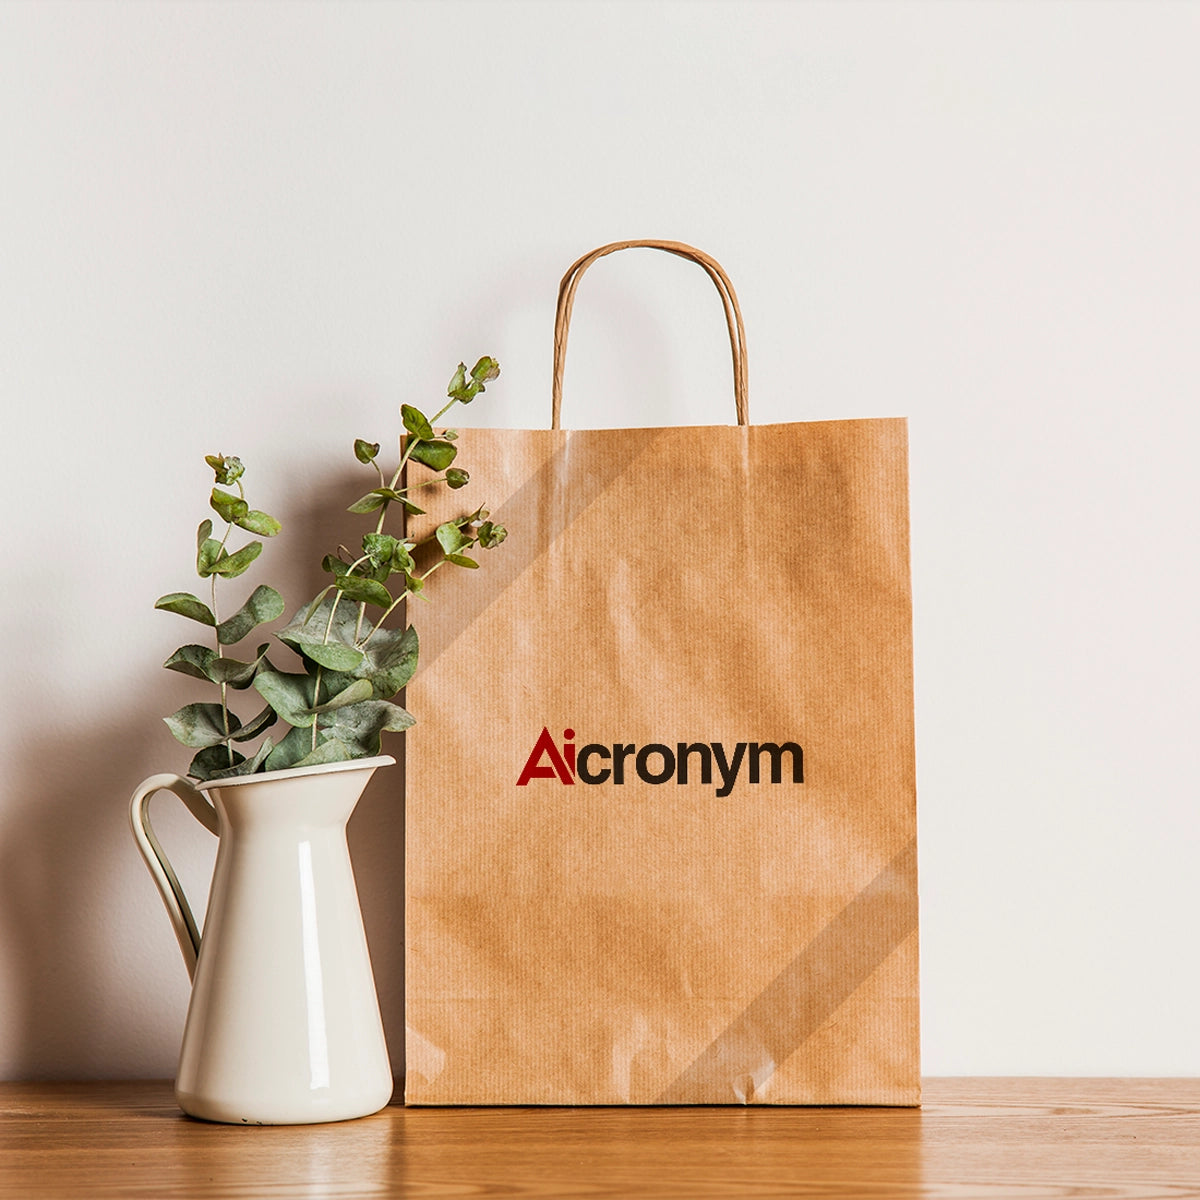 Aicronym.com